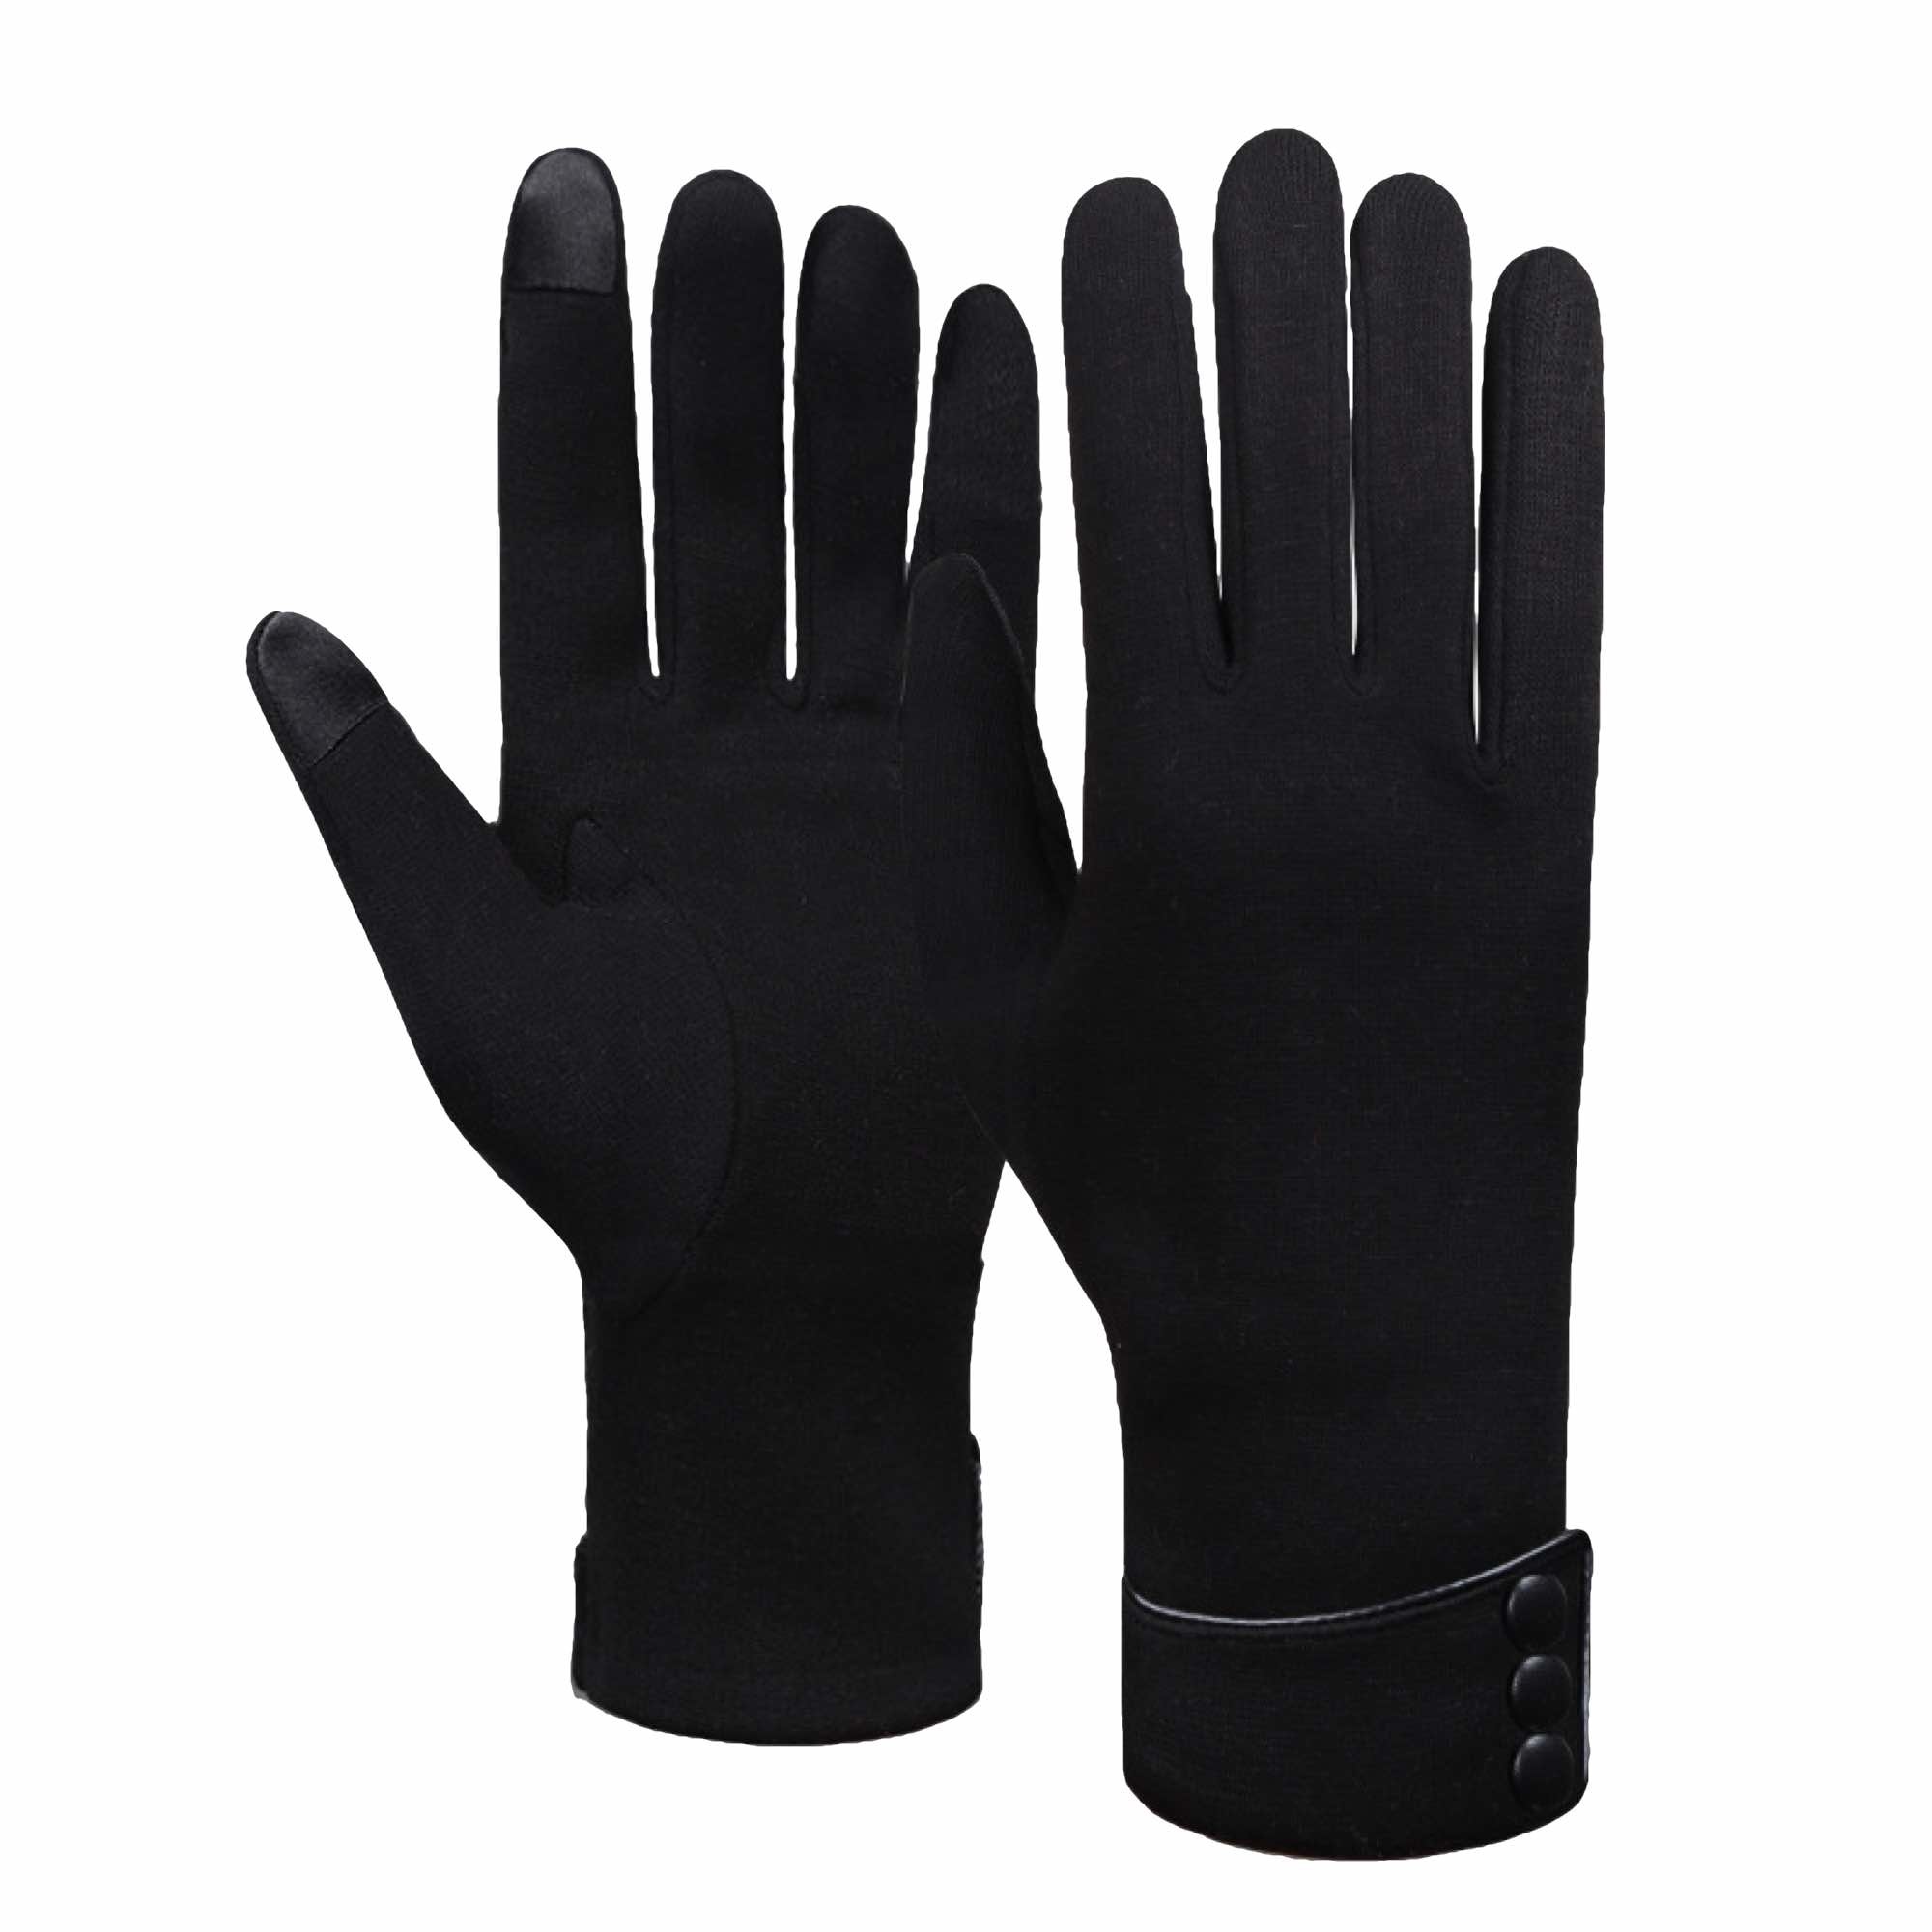 Damenhandschuhe für den Winter - Geeignet für Touchscreens - Warmes Fleece Futter - Einheitsgröße - Schwarz-2